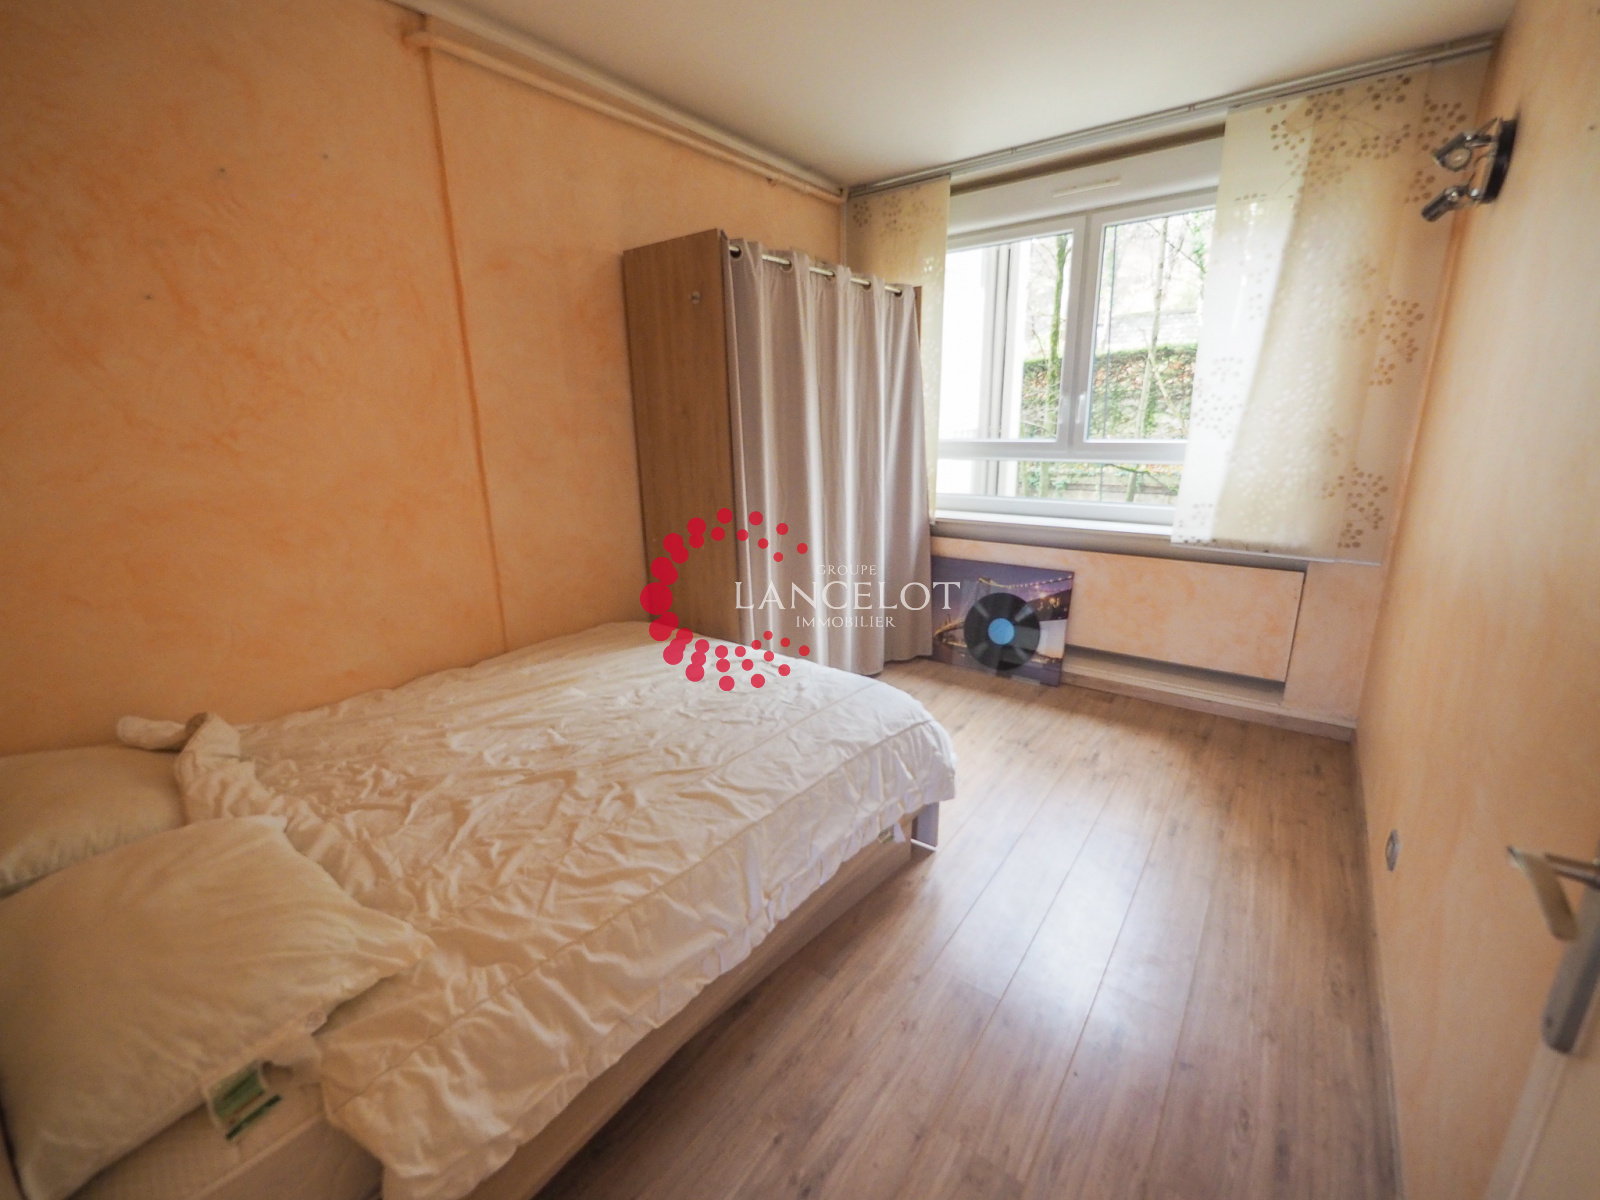 Image_9, Appartement, Sainte Foy lès Lyon, ref :527